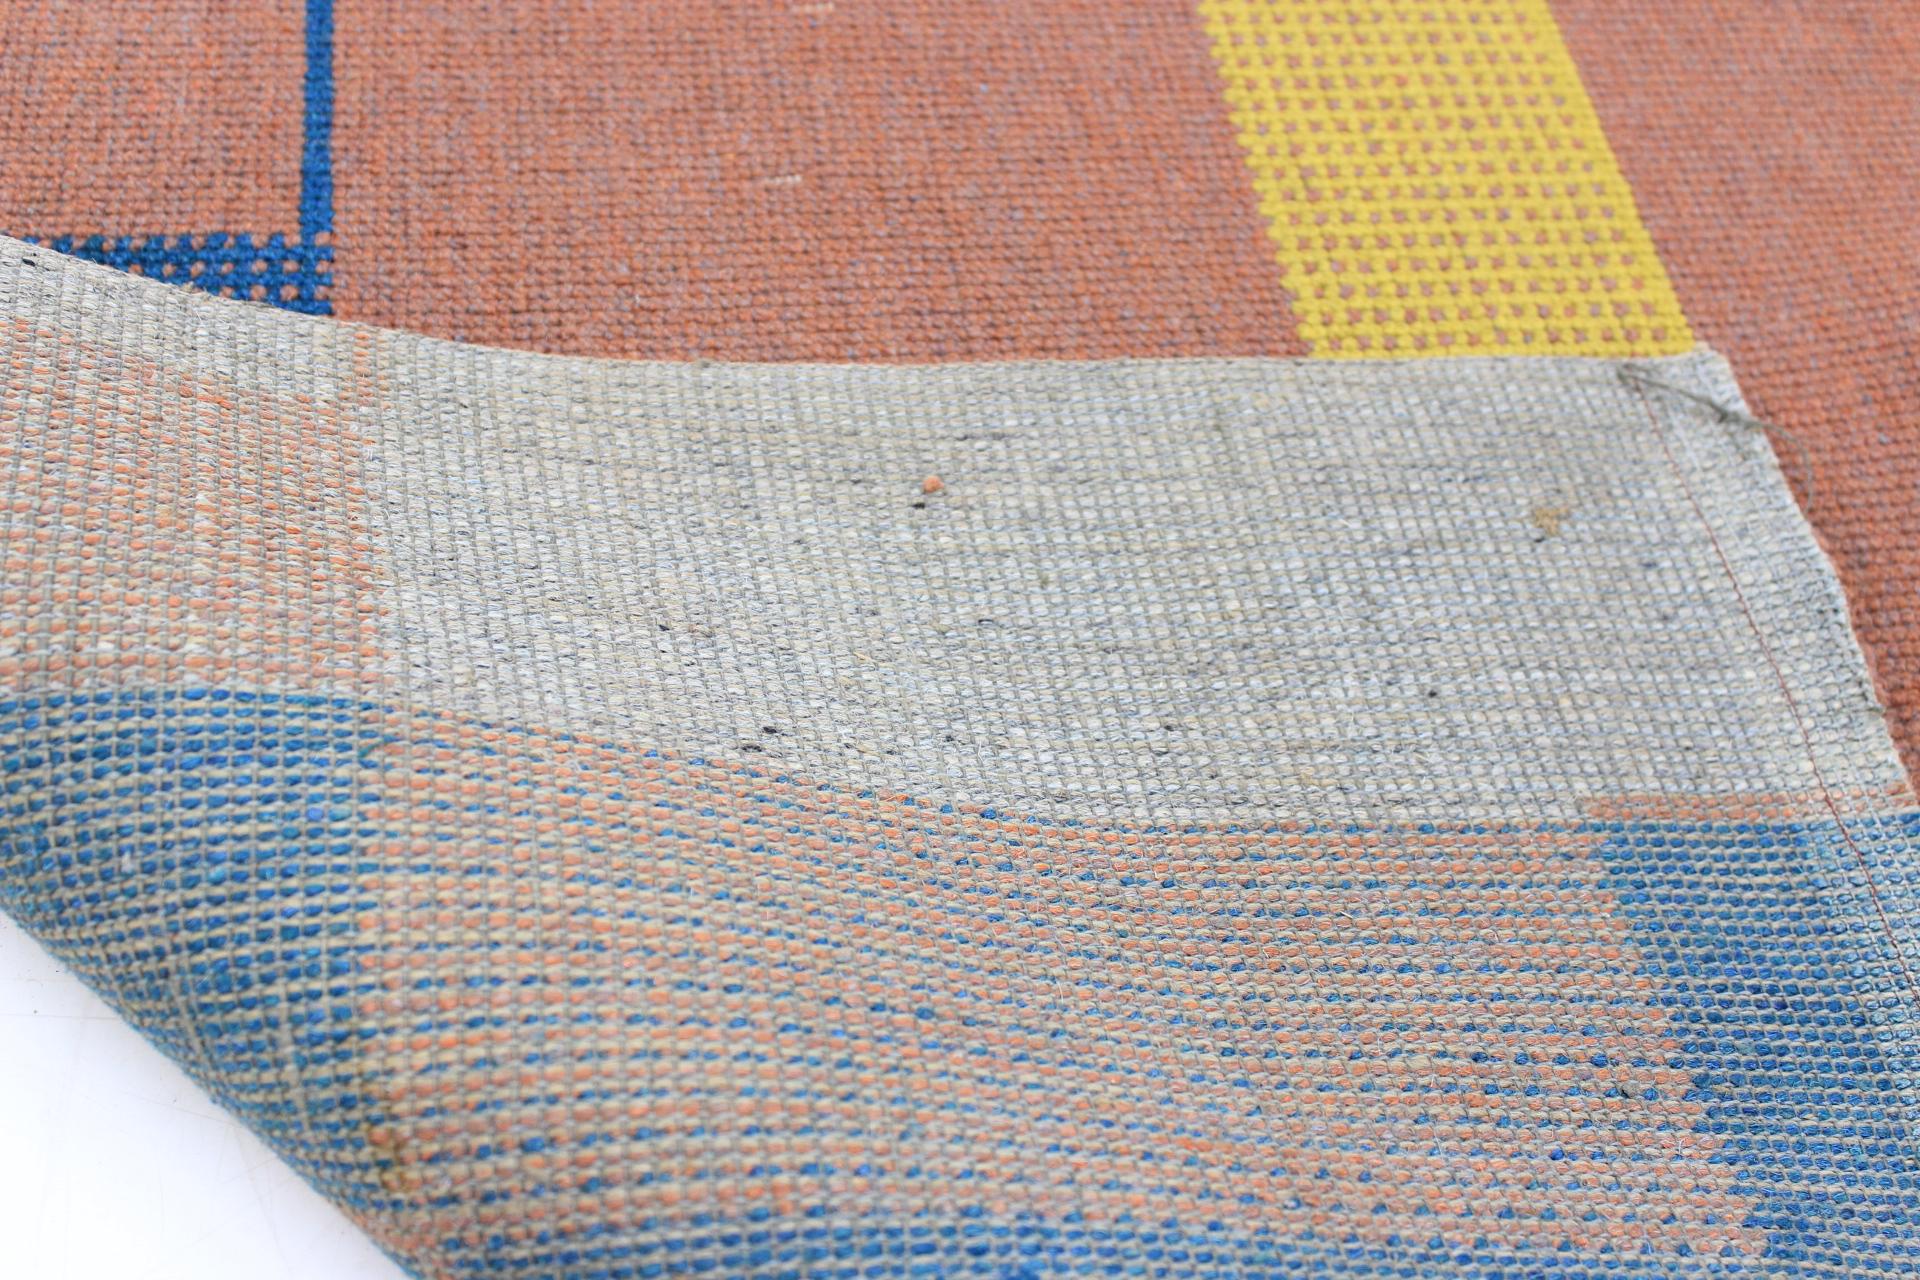 Bauhaus Style Carpet / Rug 1